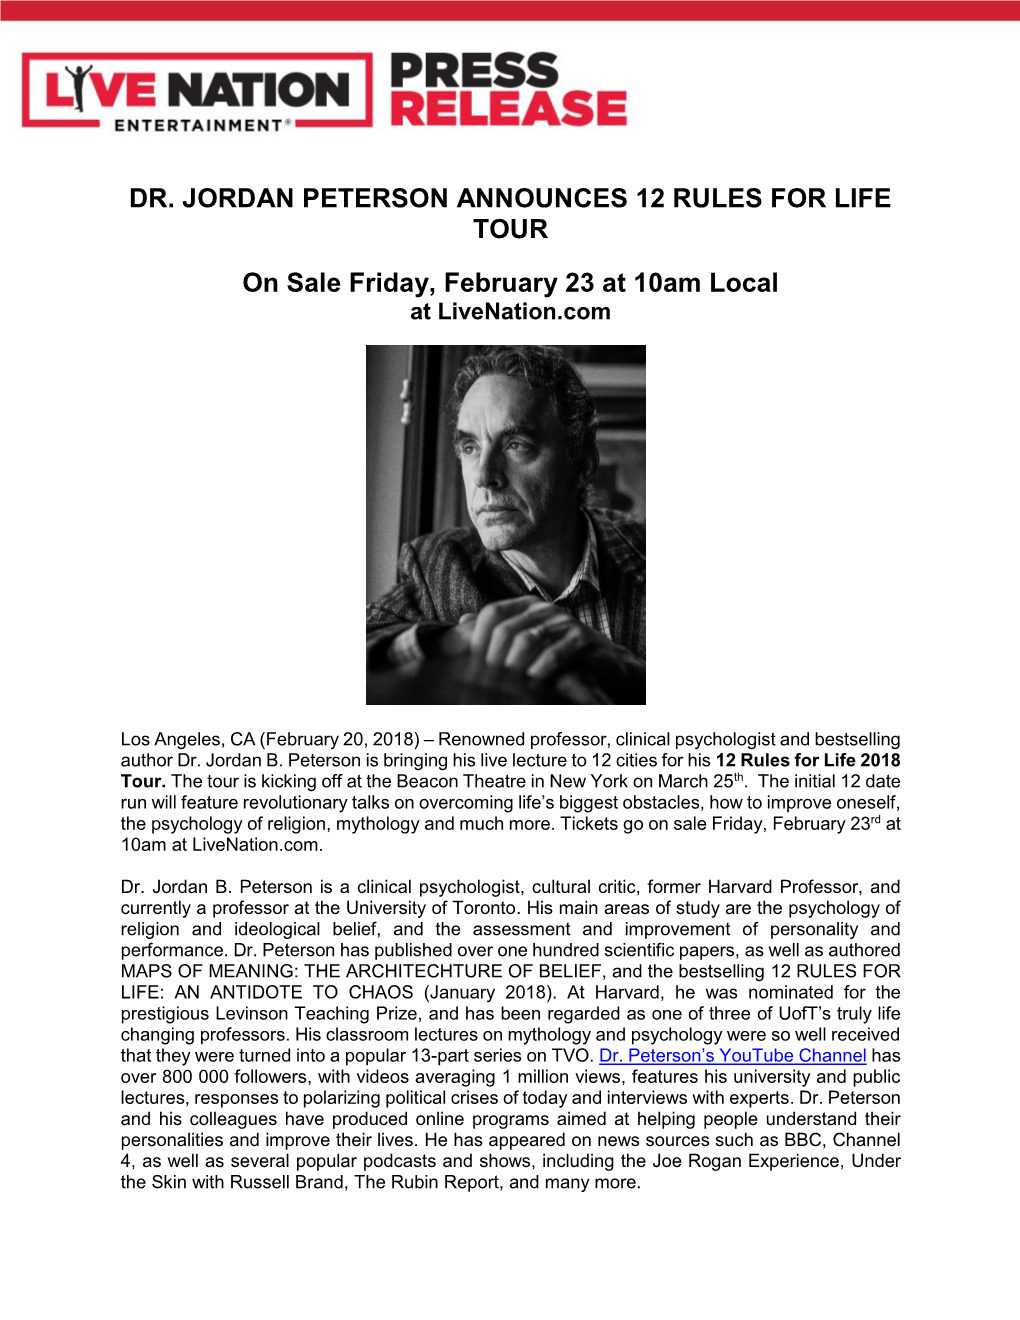 Dr. Jordan Peterson Announces 12 Rules for Life Tour